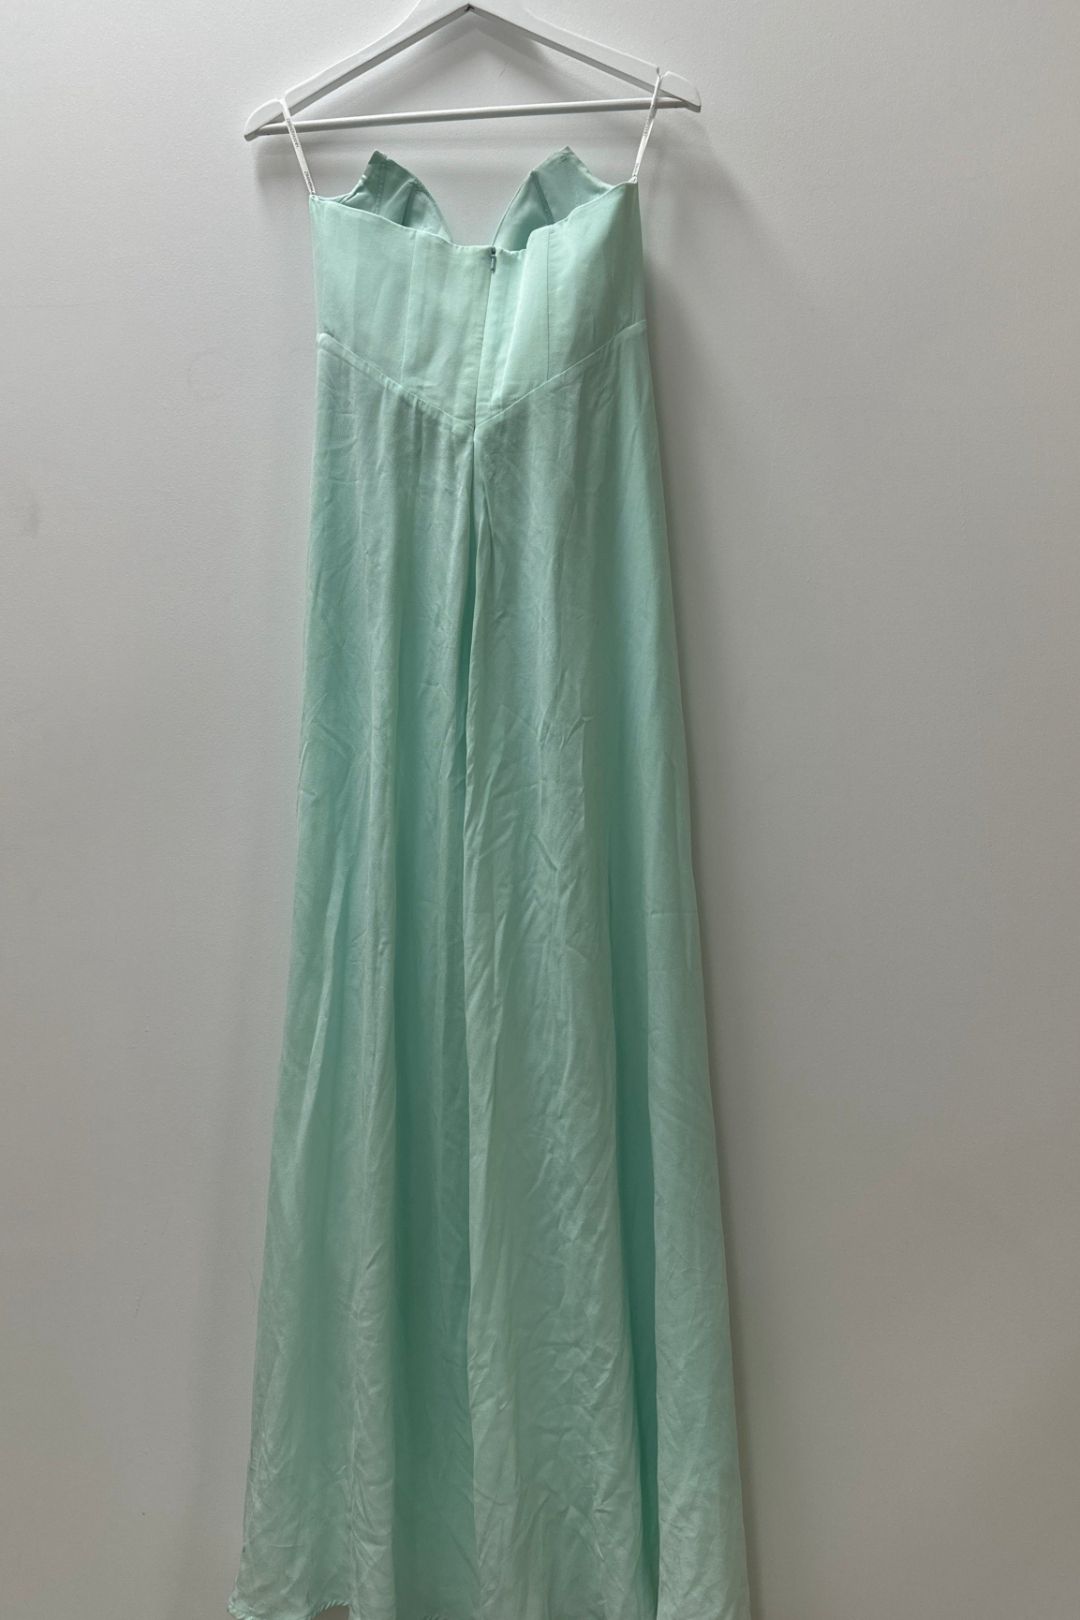 Zimmermann Strapless Floor Length Dress in Mint